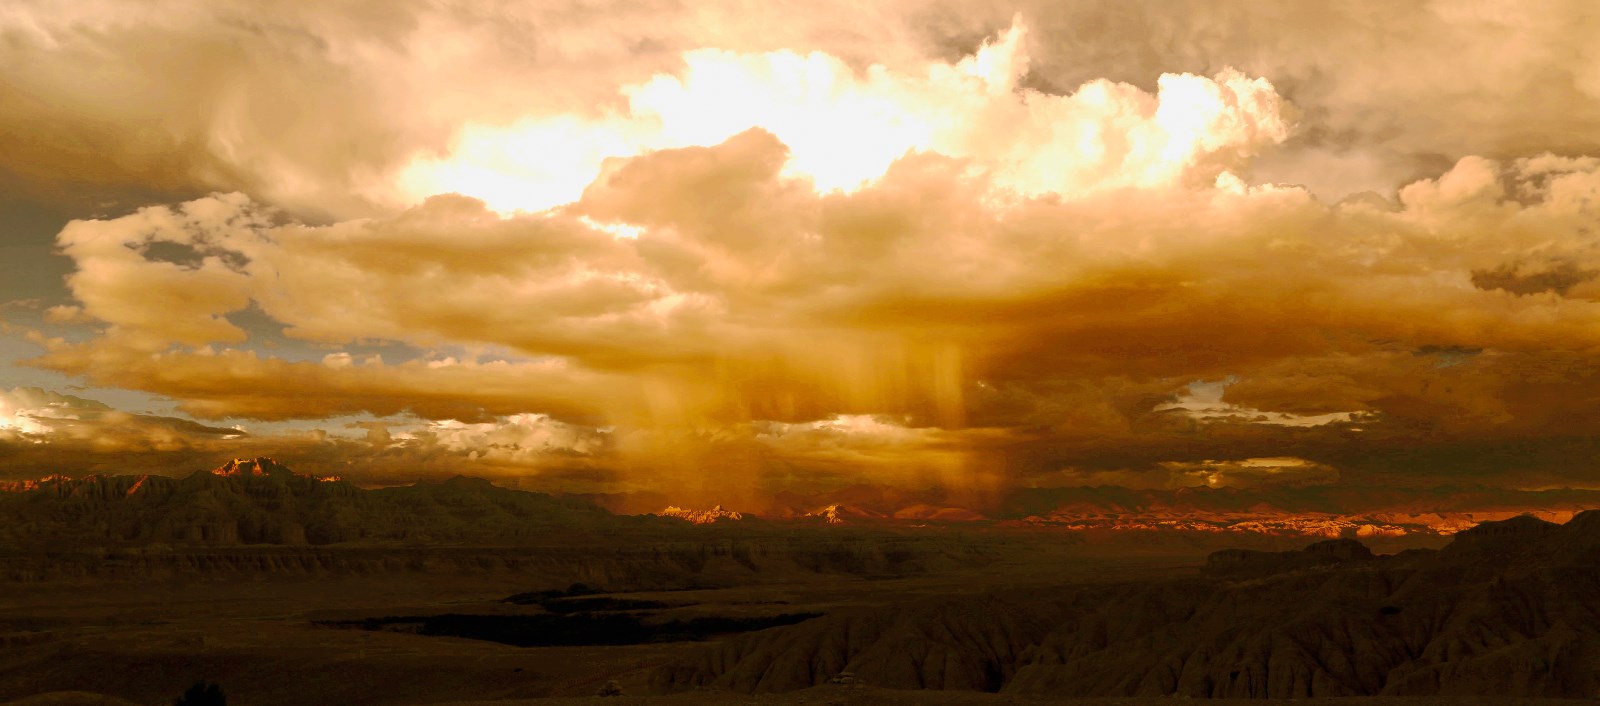 《古格神云》2014年摄于西藏阿里_1.jpg